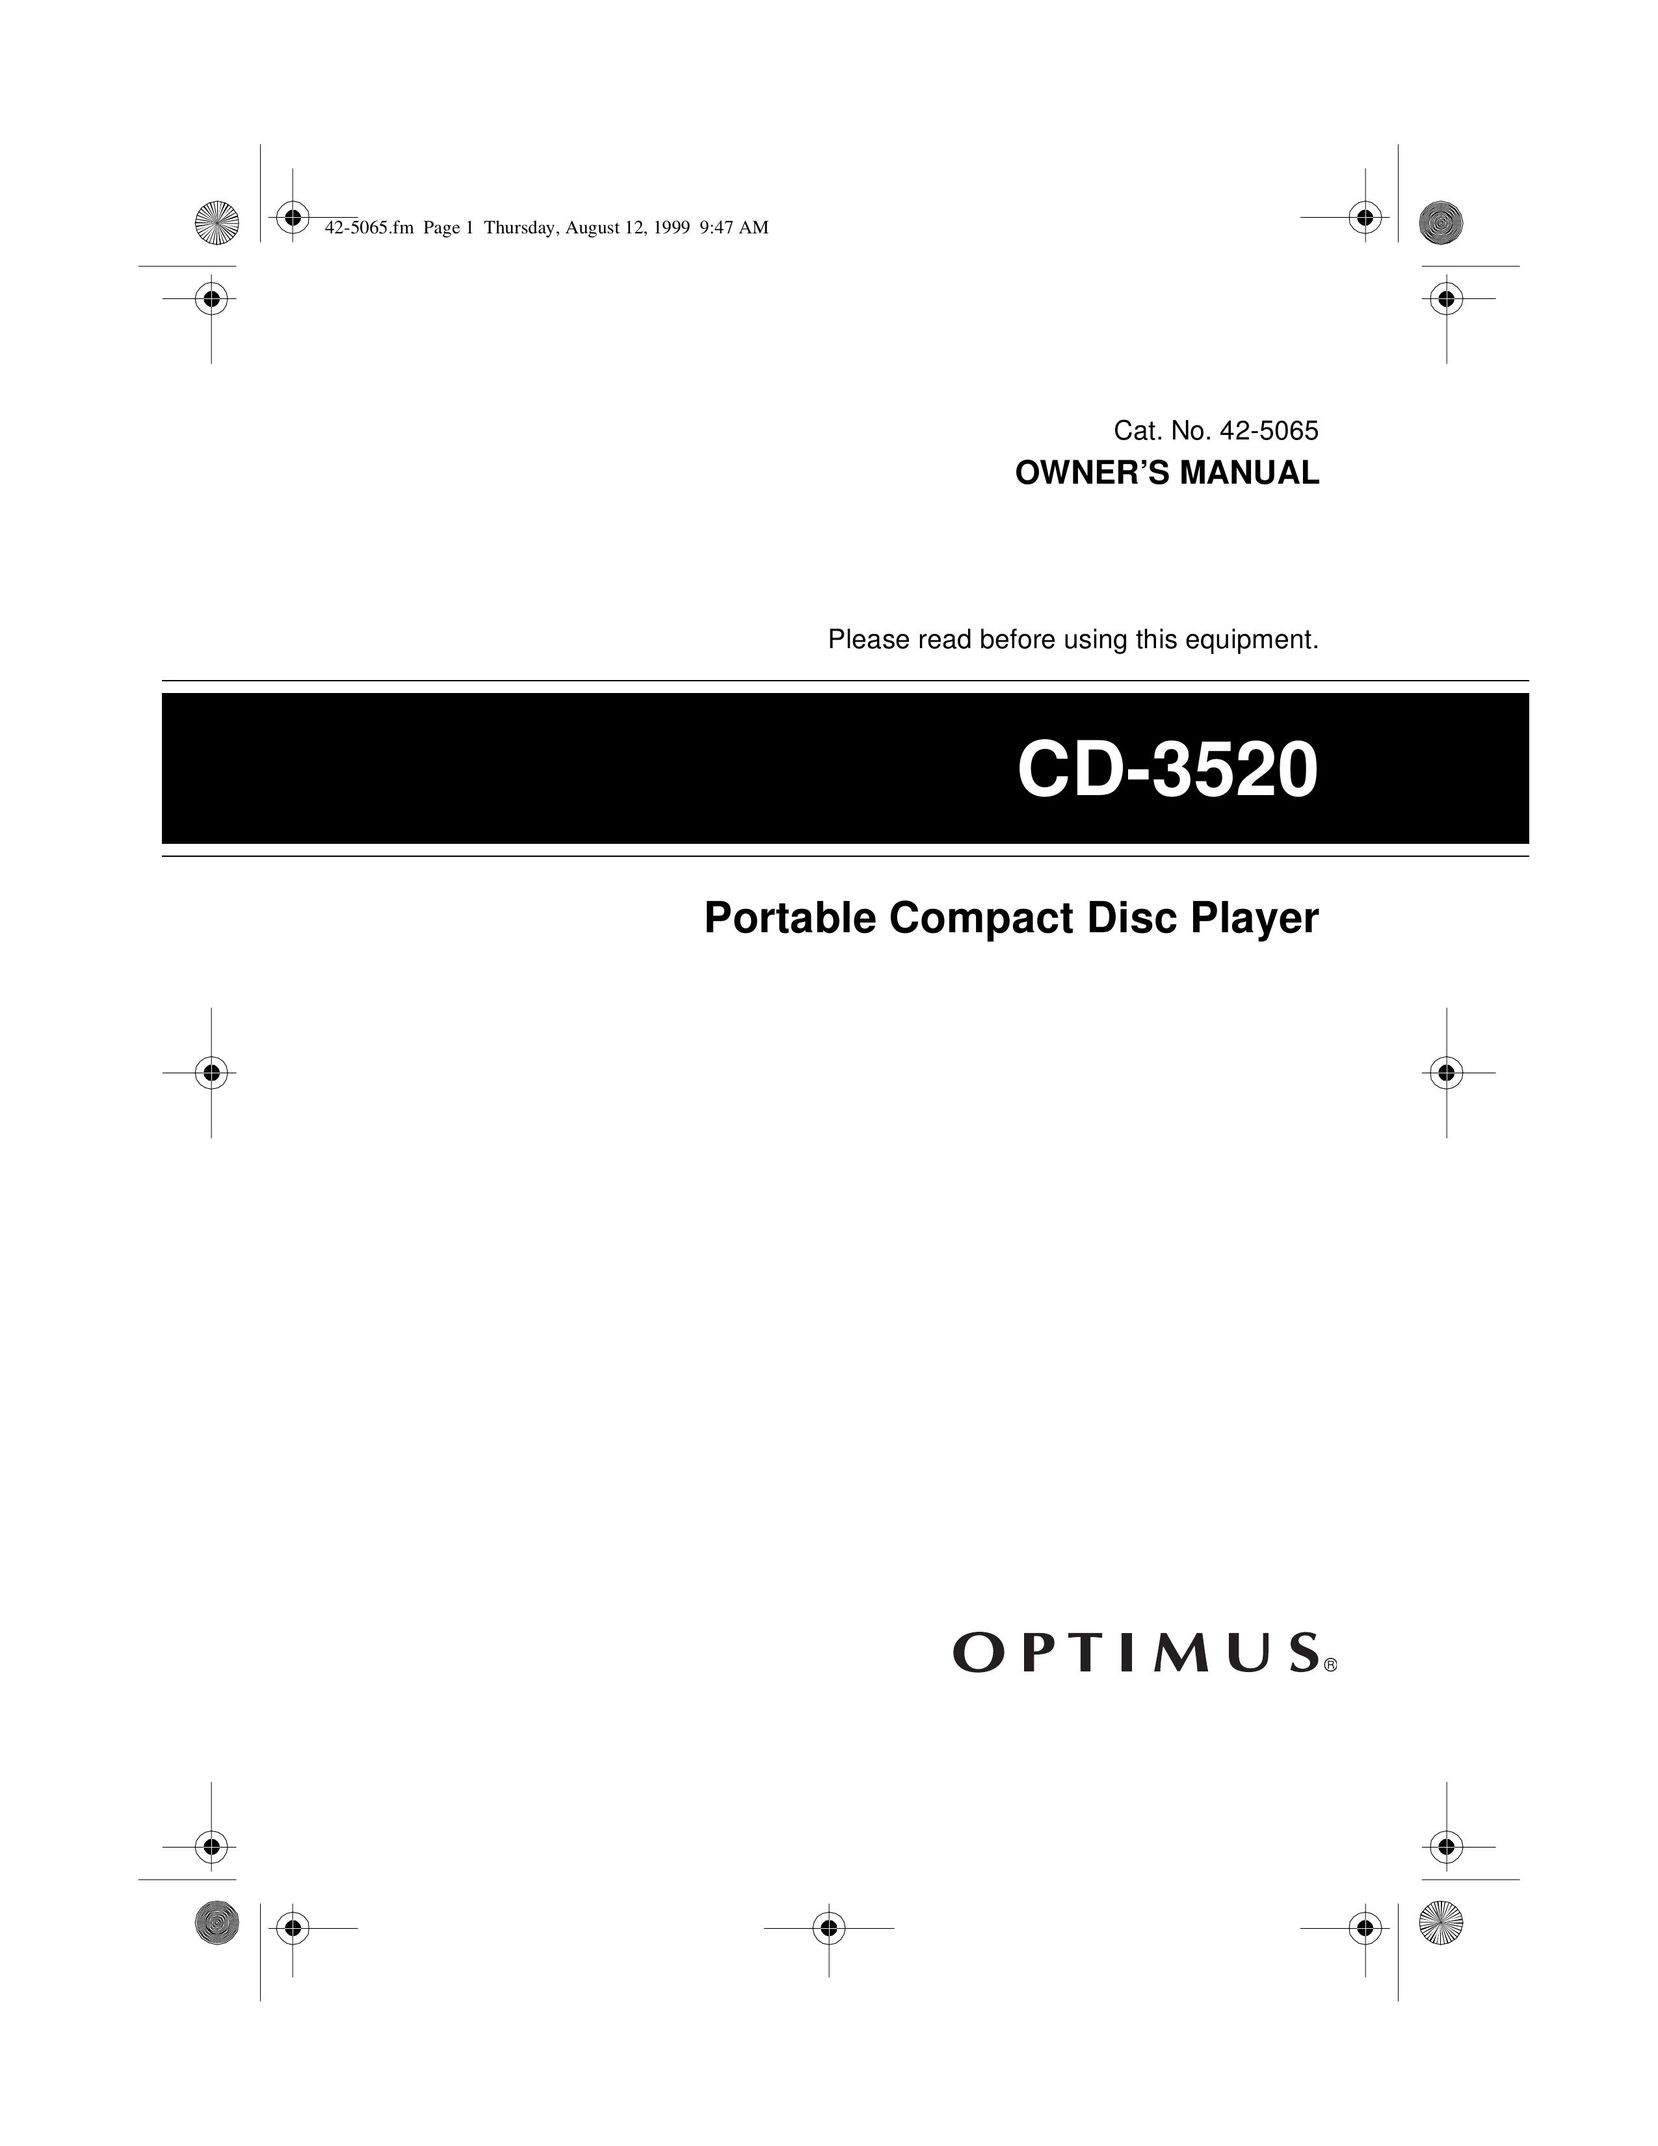 Optimus CD-3520 Portable CD Player User Manual